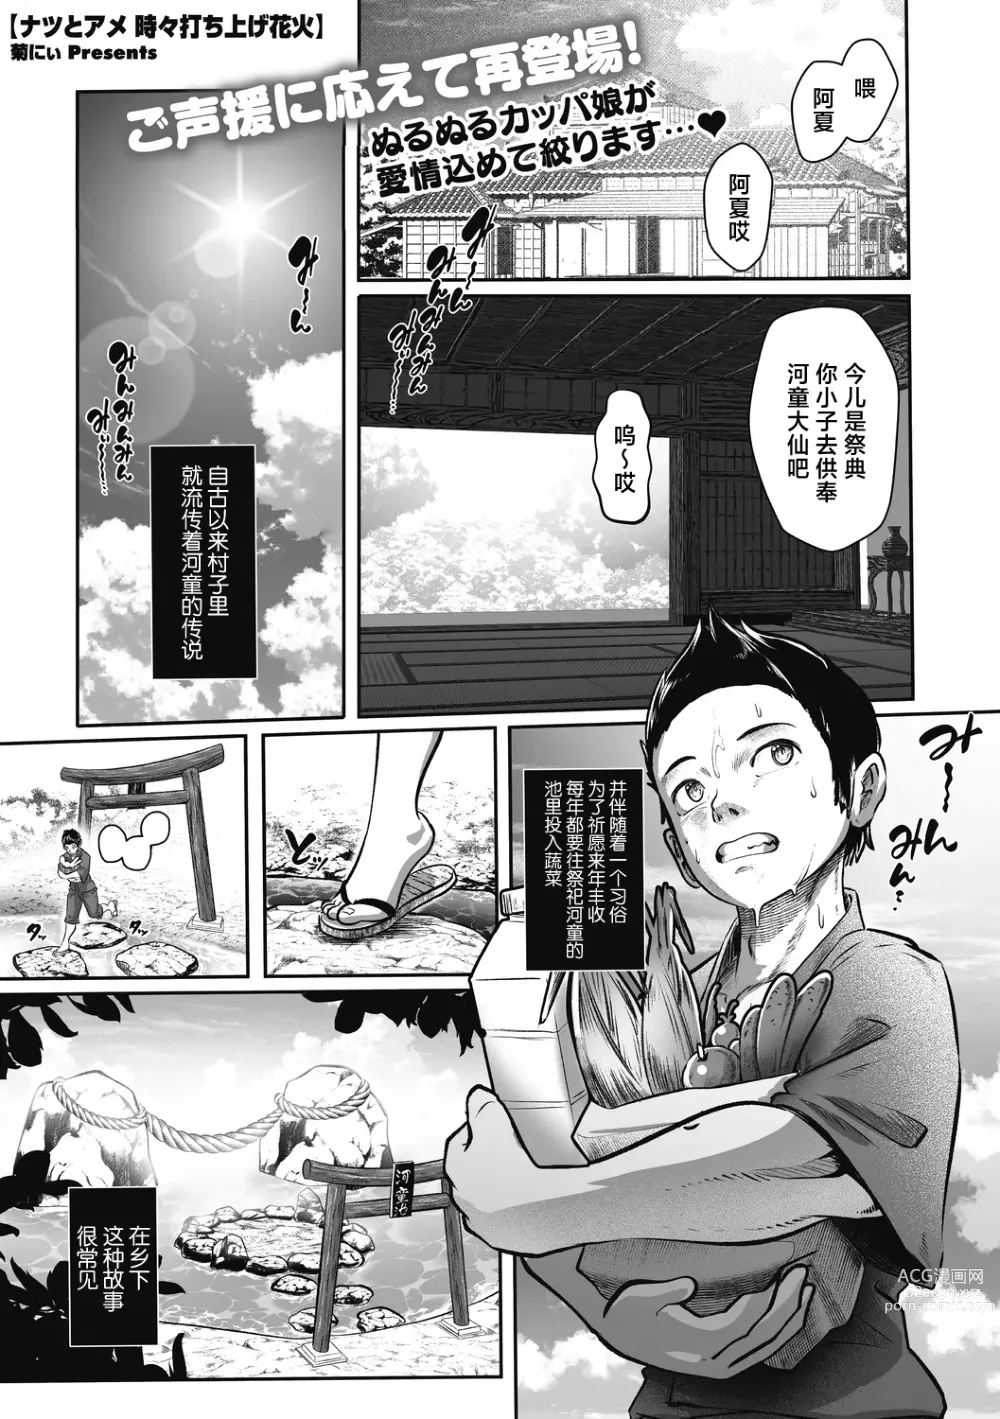 Page 2 of manga Natsu to Ame Tokidoki Uchiage Hanabi